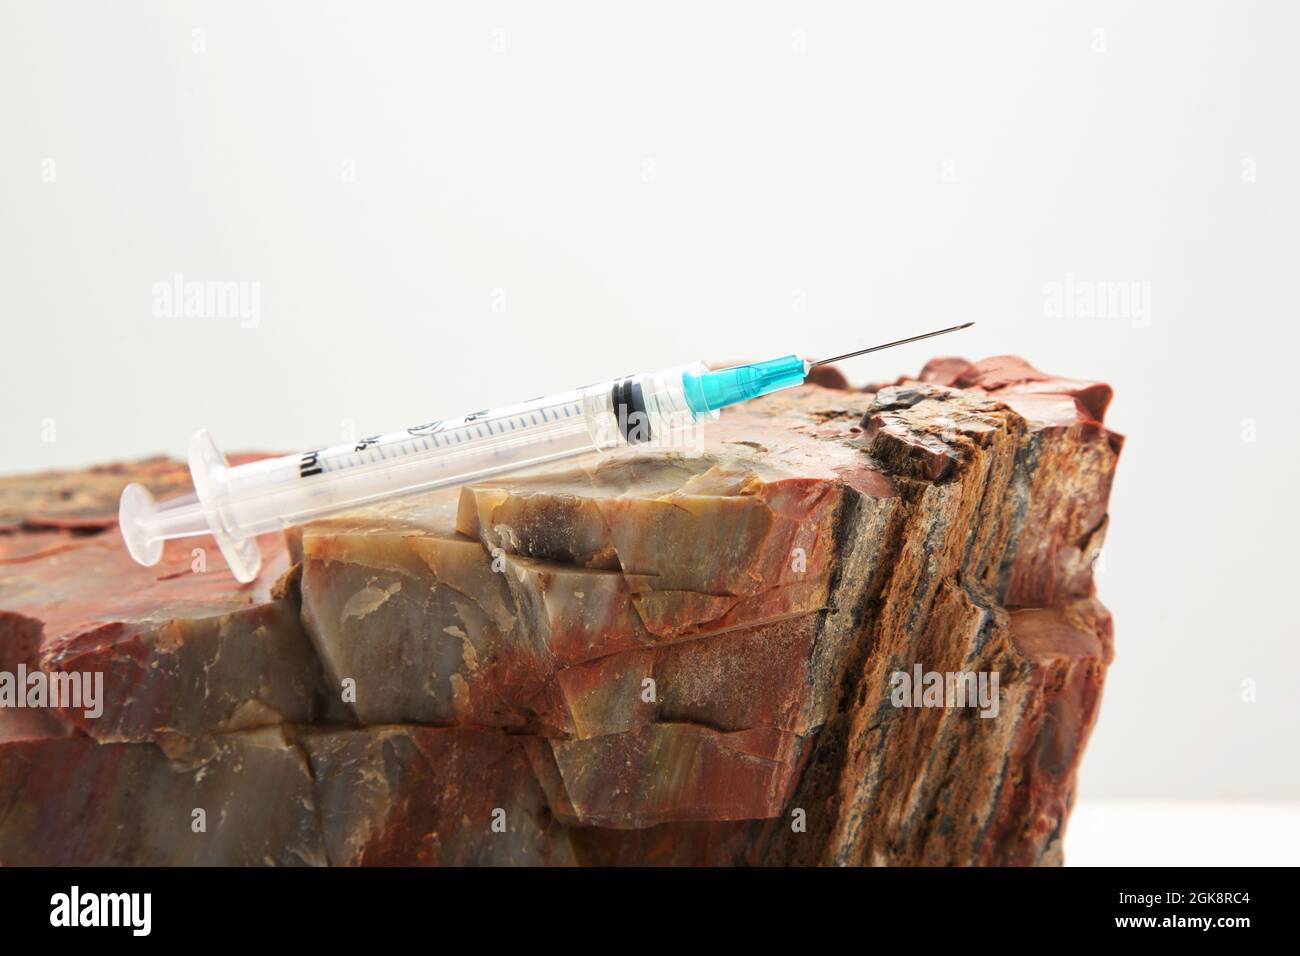 La aguja de inyección sobre roca refleja sólidas recomendaciones de salud pública con datos firmes para apoyar la orientación de la vacuna en la imagen conceptual Foto de stock